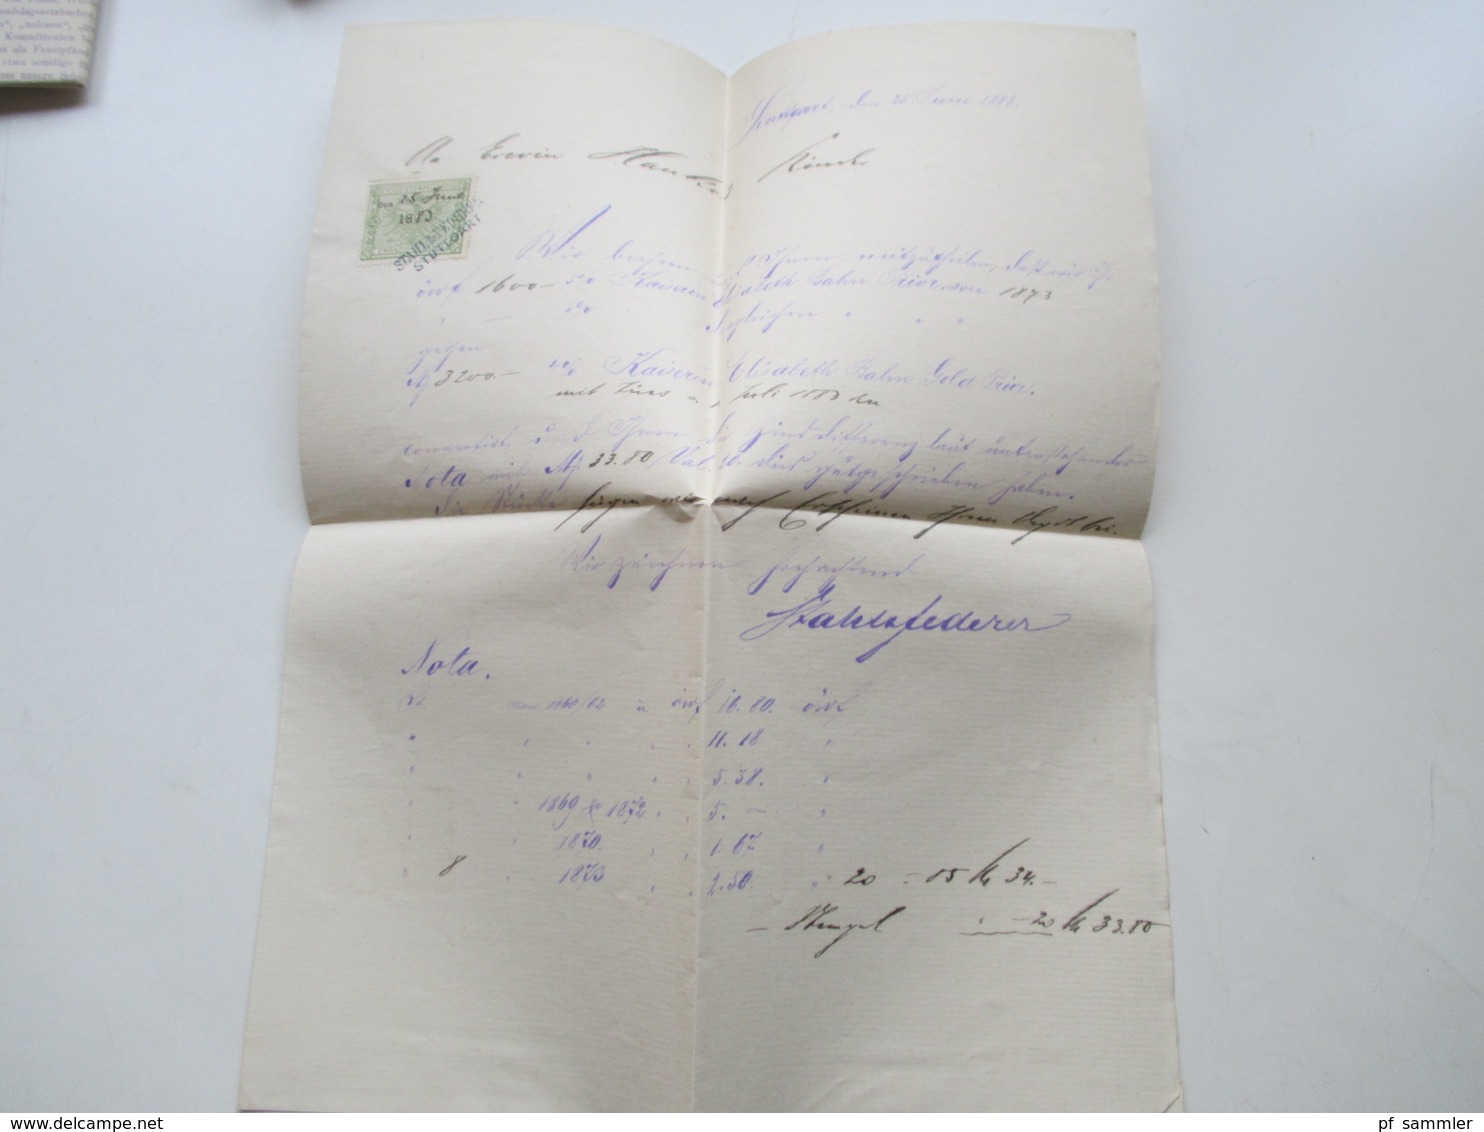 1882 - 93 Württemberg Stuttgart - New York Bank Belege / Nota / Stempelmarken + Post Einlieferungsscheine nach New York